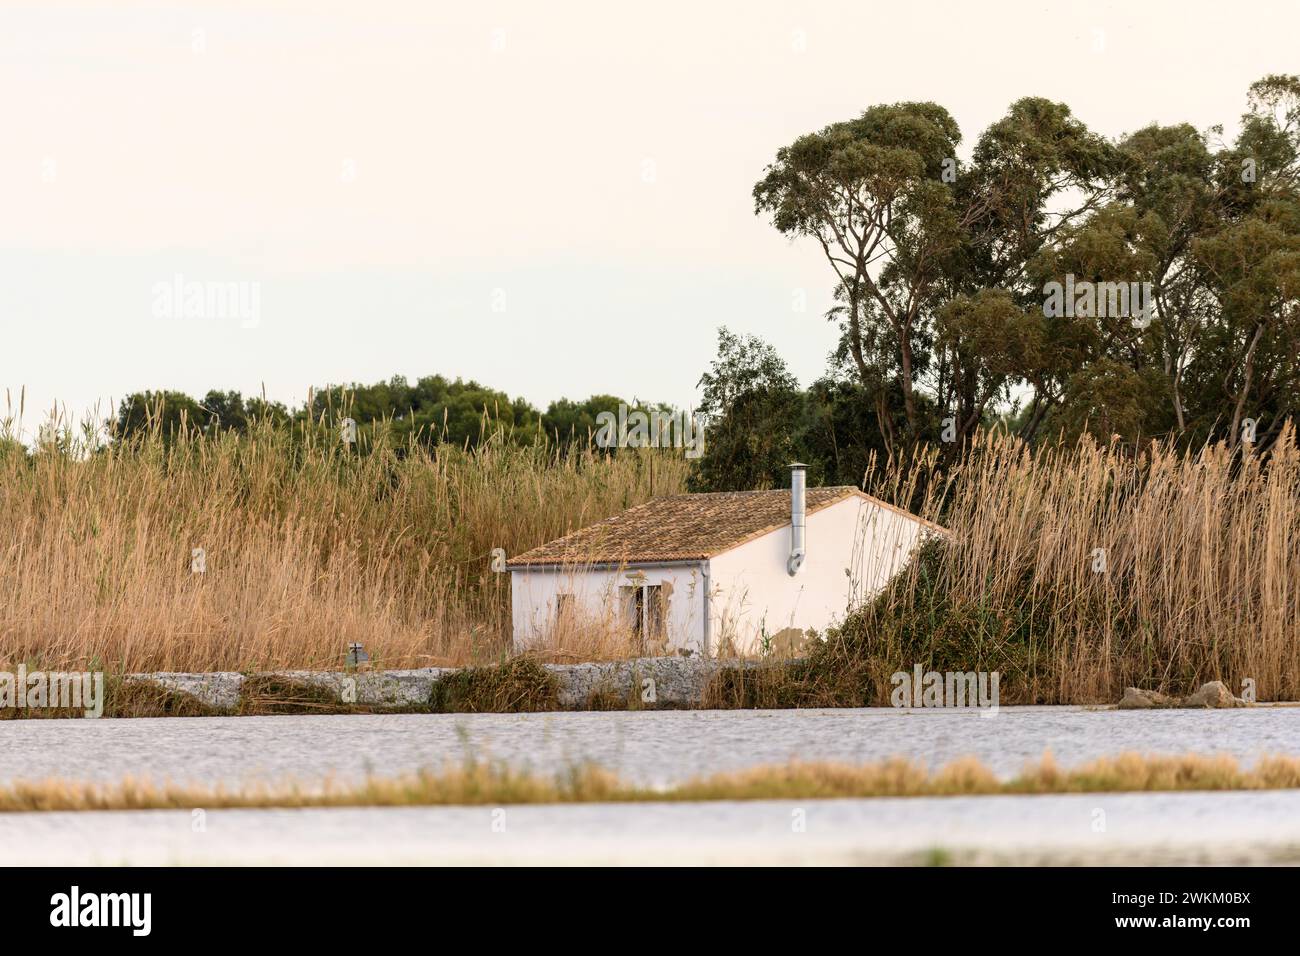 Un charmant cottage au toit de chaume se dresse au bord de l'eau dans le parc naturel d'Albufera près de Valence, offrant une retraite rurale paisible. Banque D'Images